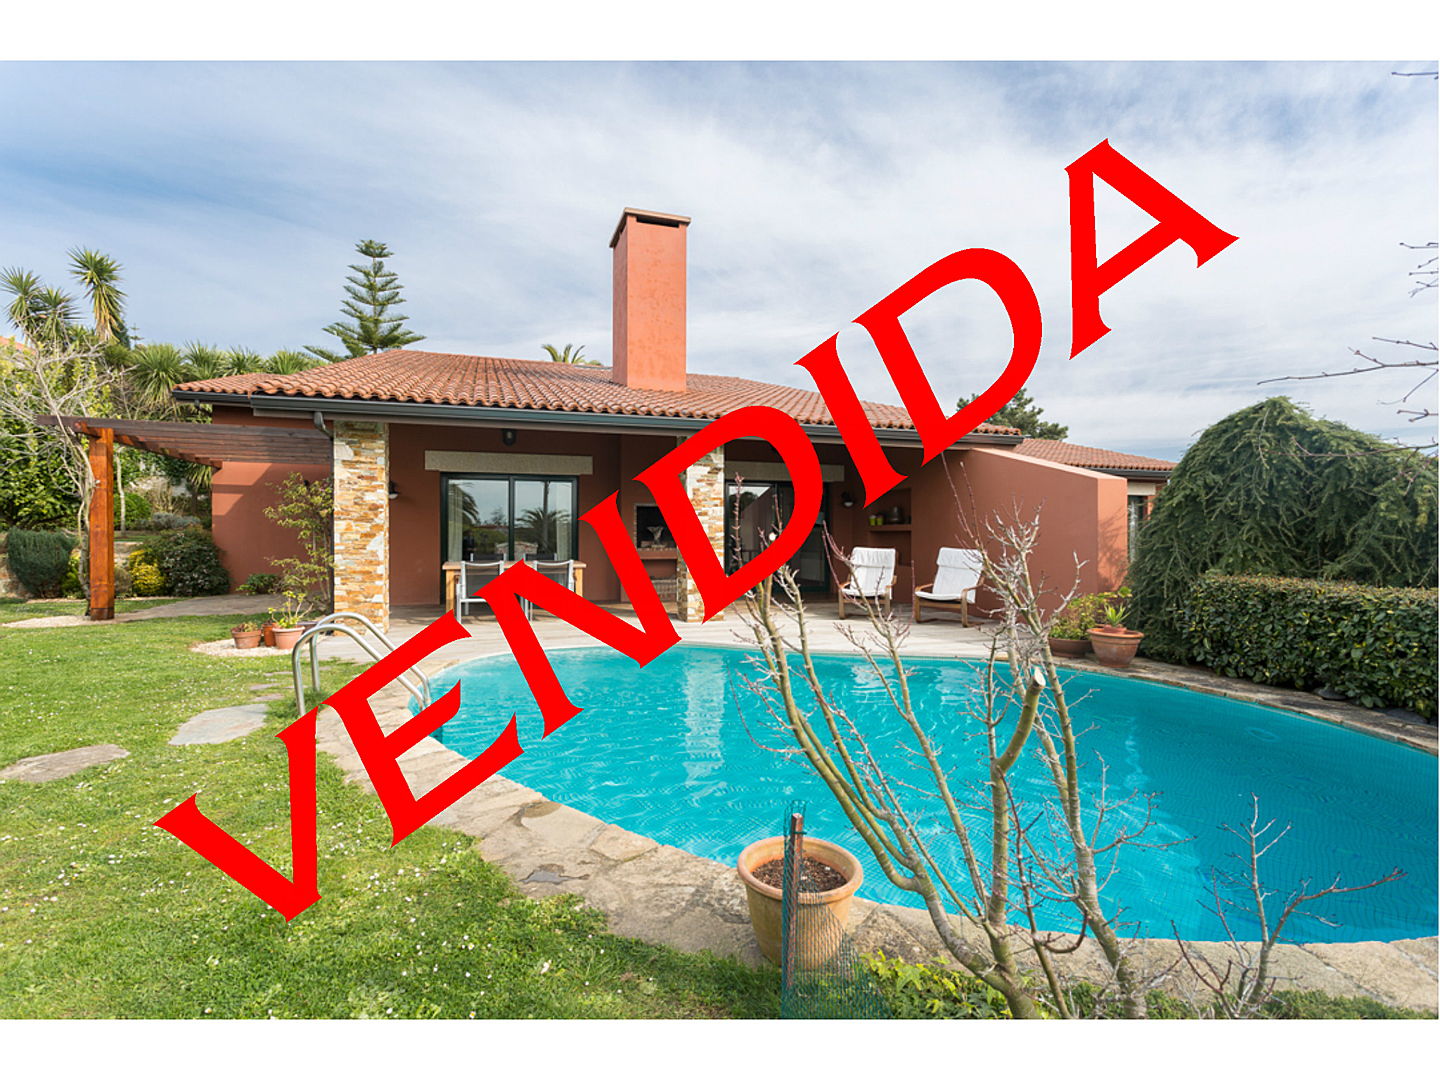  La Coruña, España
- Vendida Casteliño, venta con éxito en sada, casa vendida con Engel & Völkers La Coruña.jpg